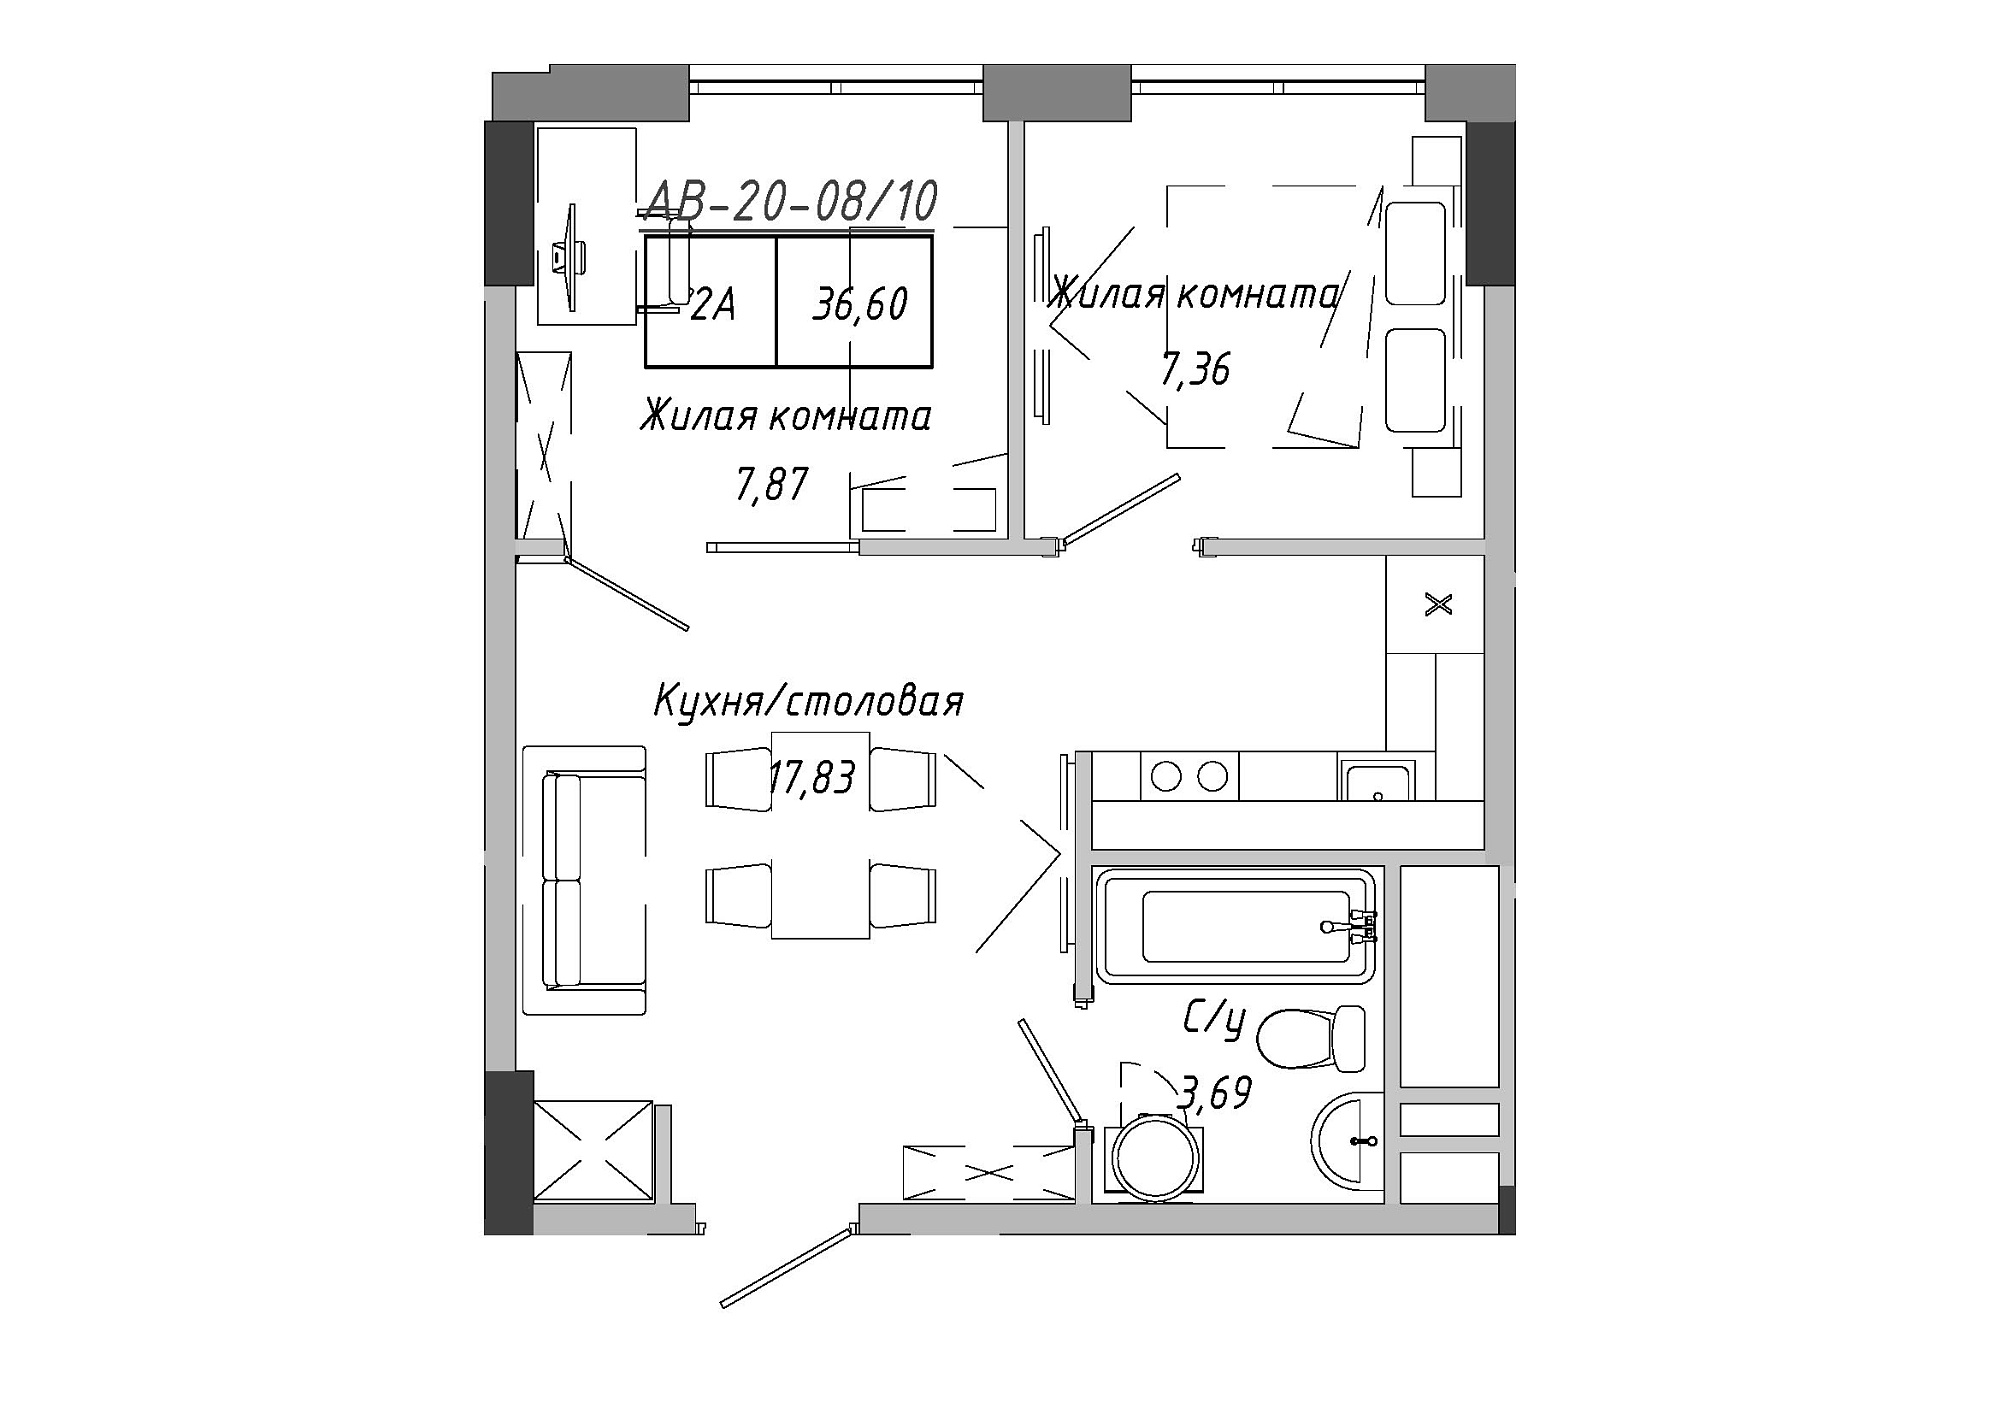 Планування 2-к квартира площею 37.15м2, AB-20-08/00010.